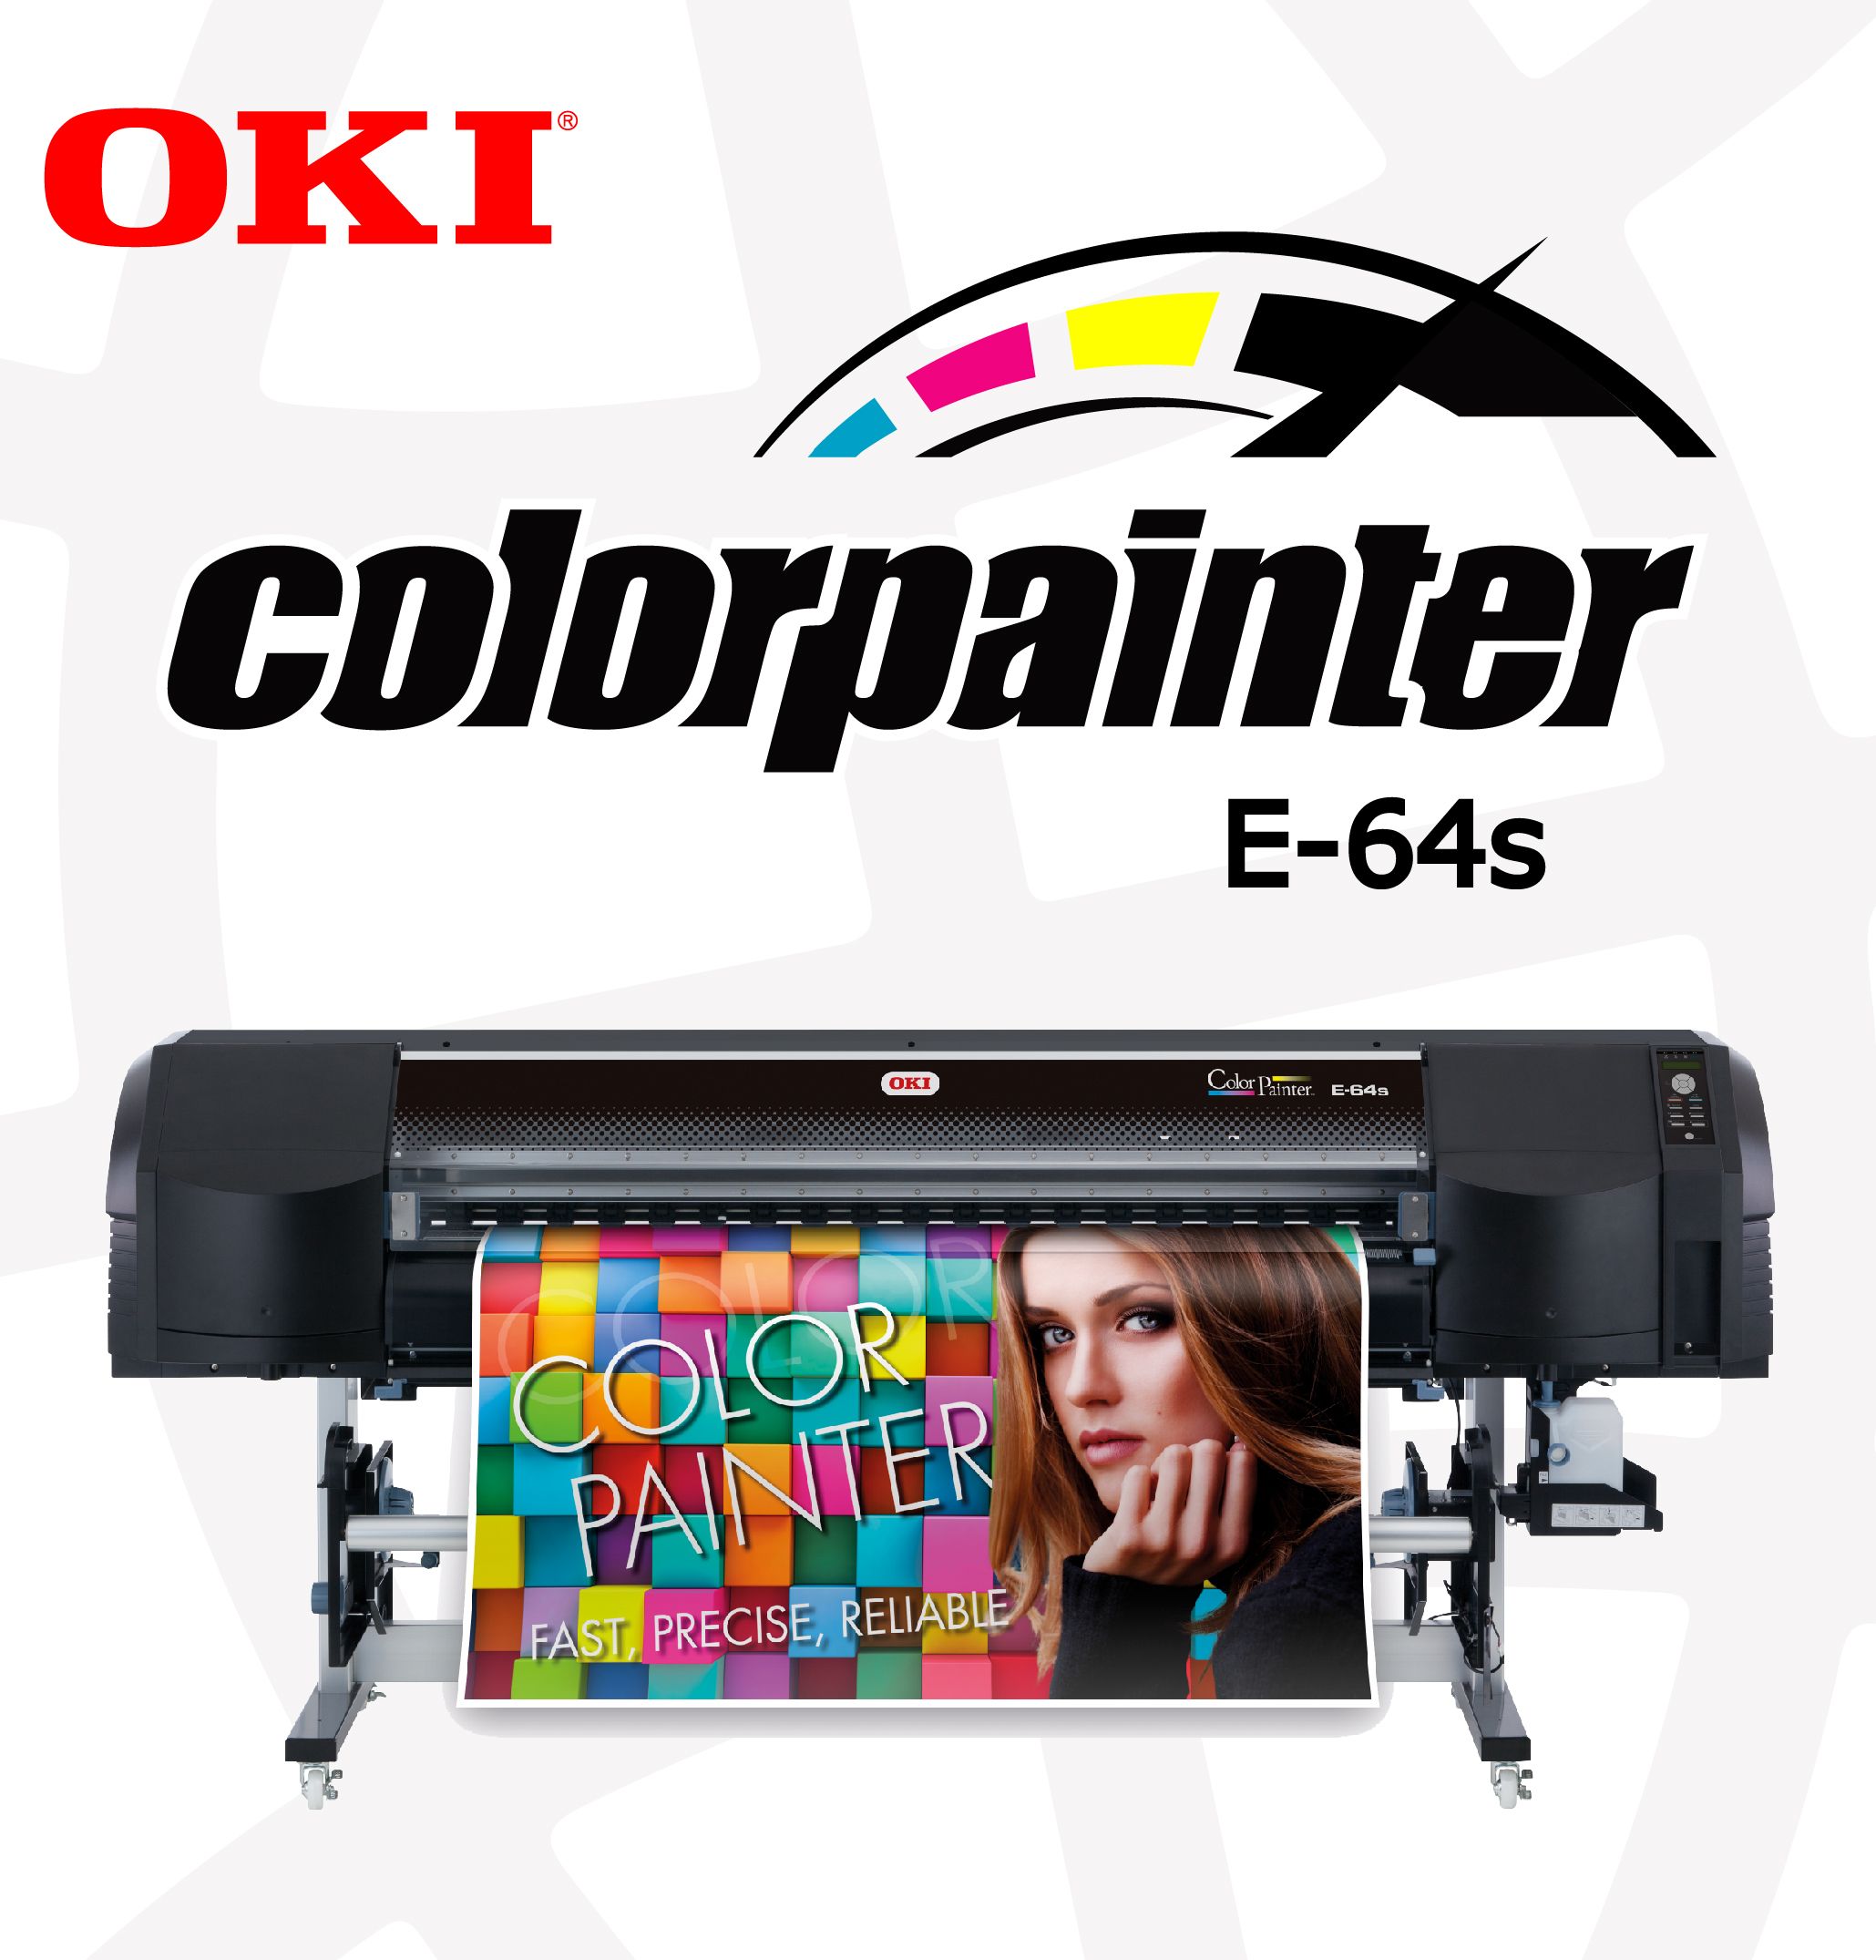 Color Painter E-64s